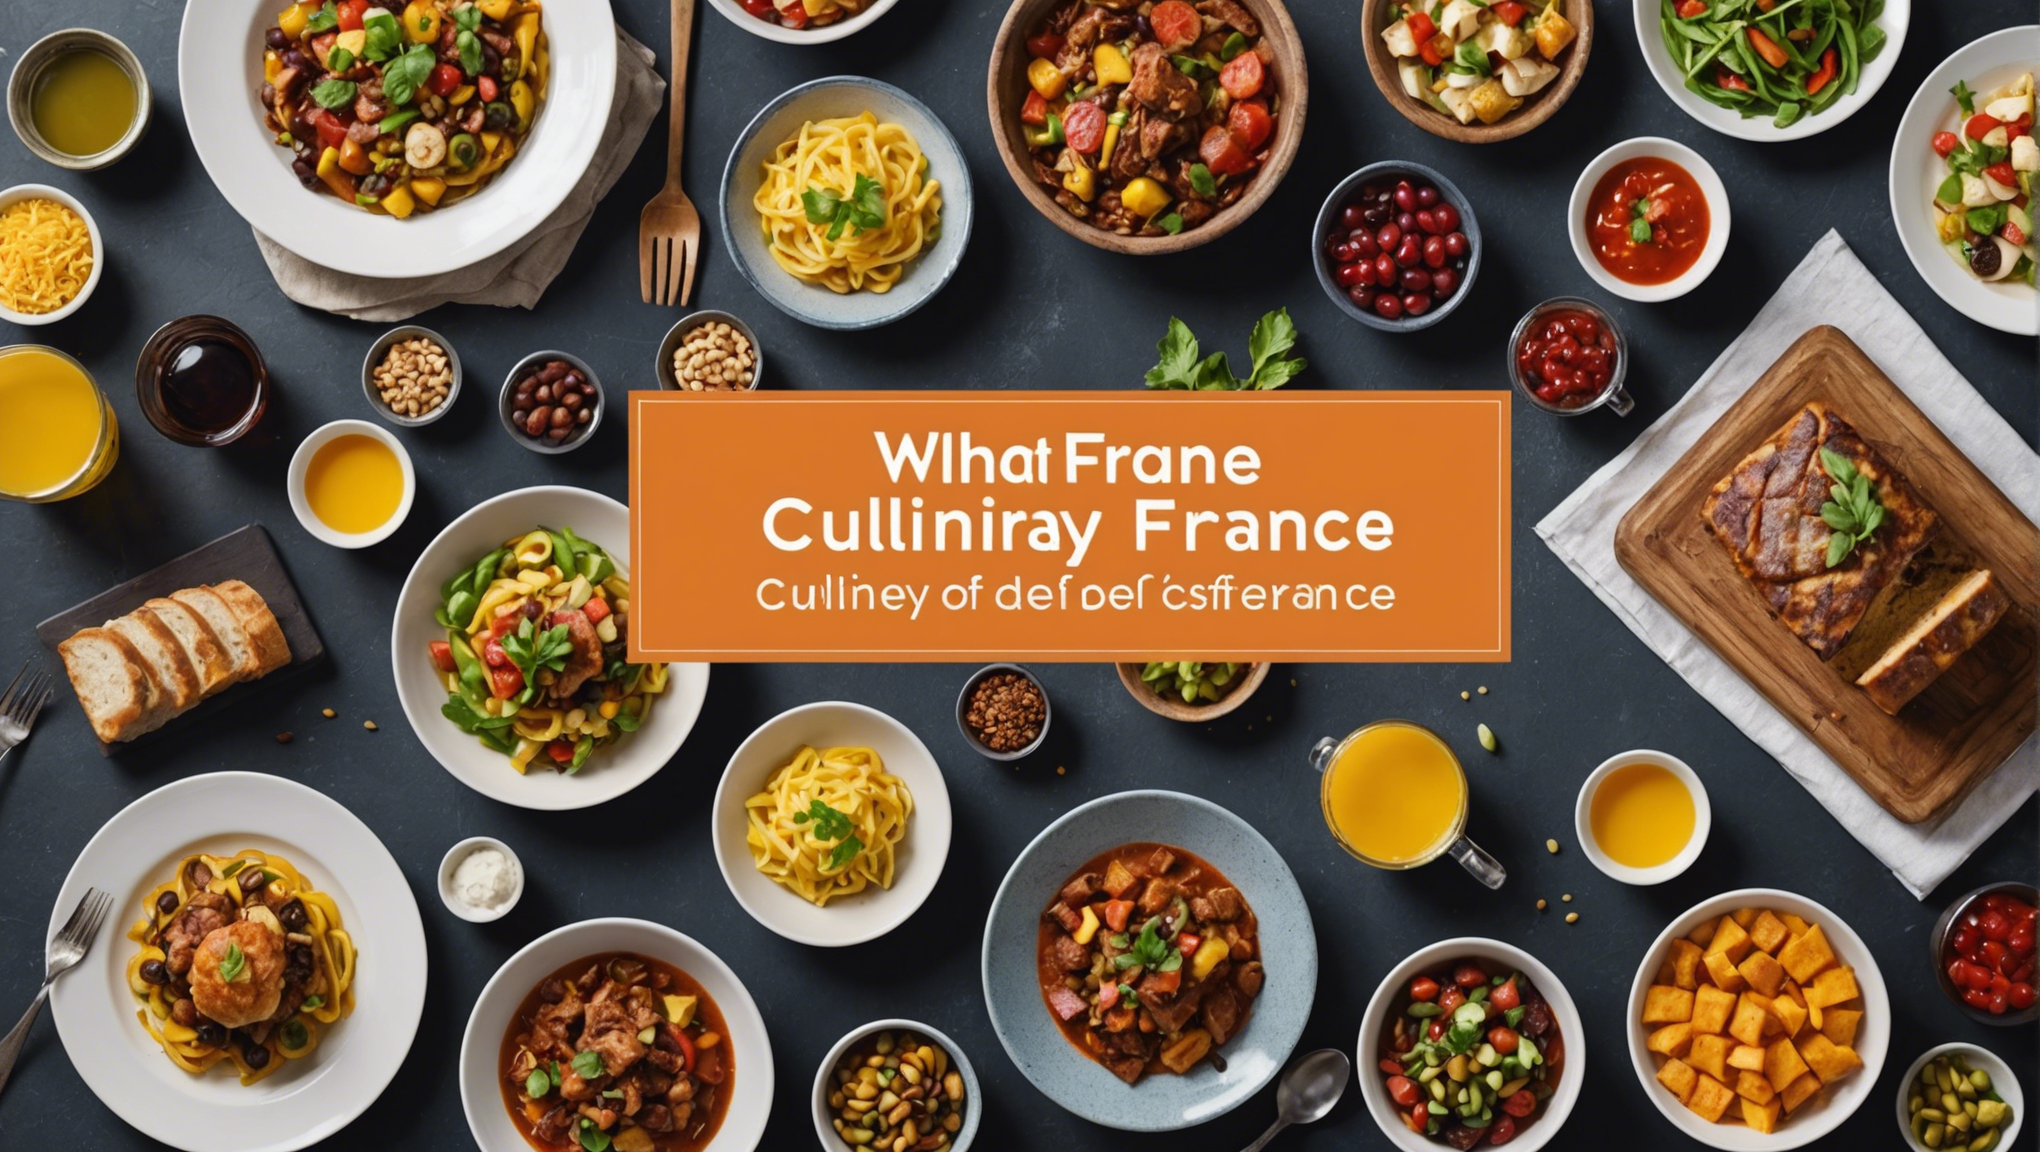 Quelles sont les spécialités culinaires de l’Ile-de-France ?